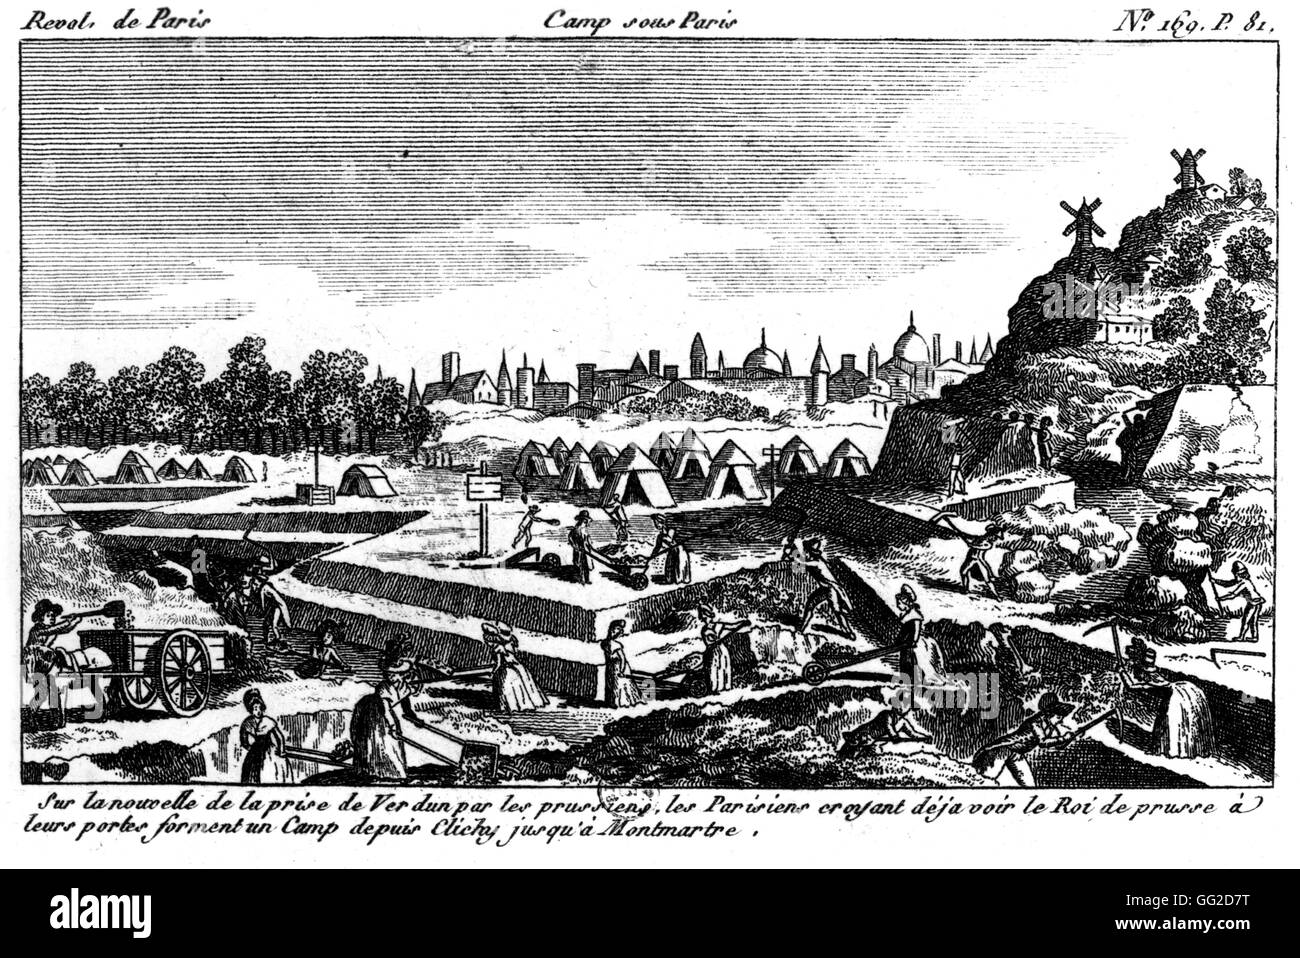 Camp établi en vertu de la Place de Clichy à Montmartre, quand les Prussiens envahirent Verdun 1792 France - Révolution de 1789 à Paris. Bibliothèque nationale Banque D'Images